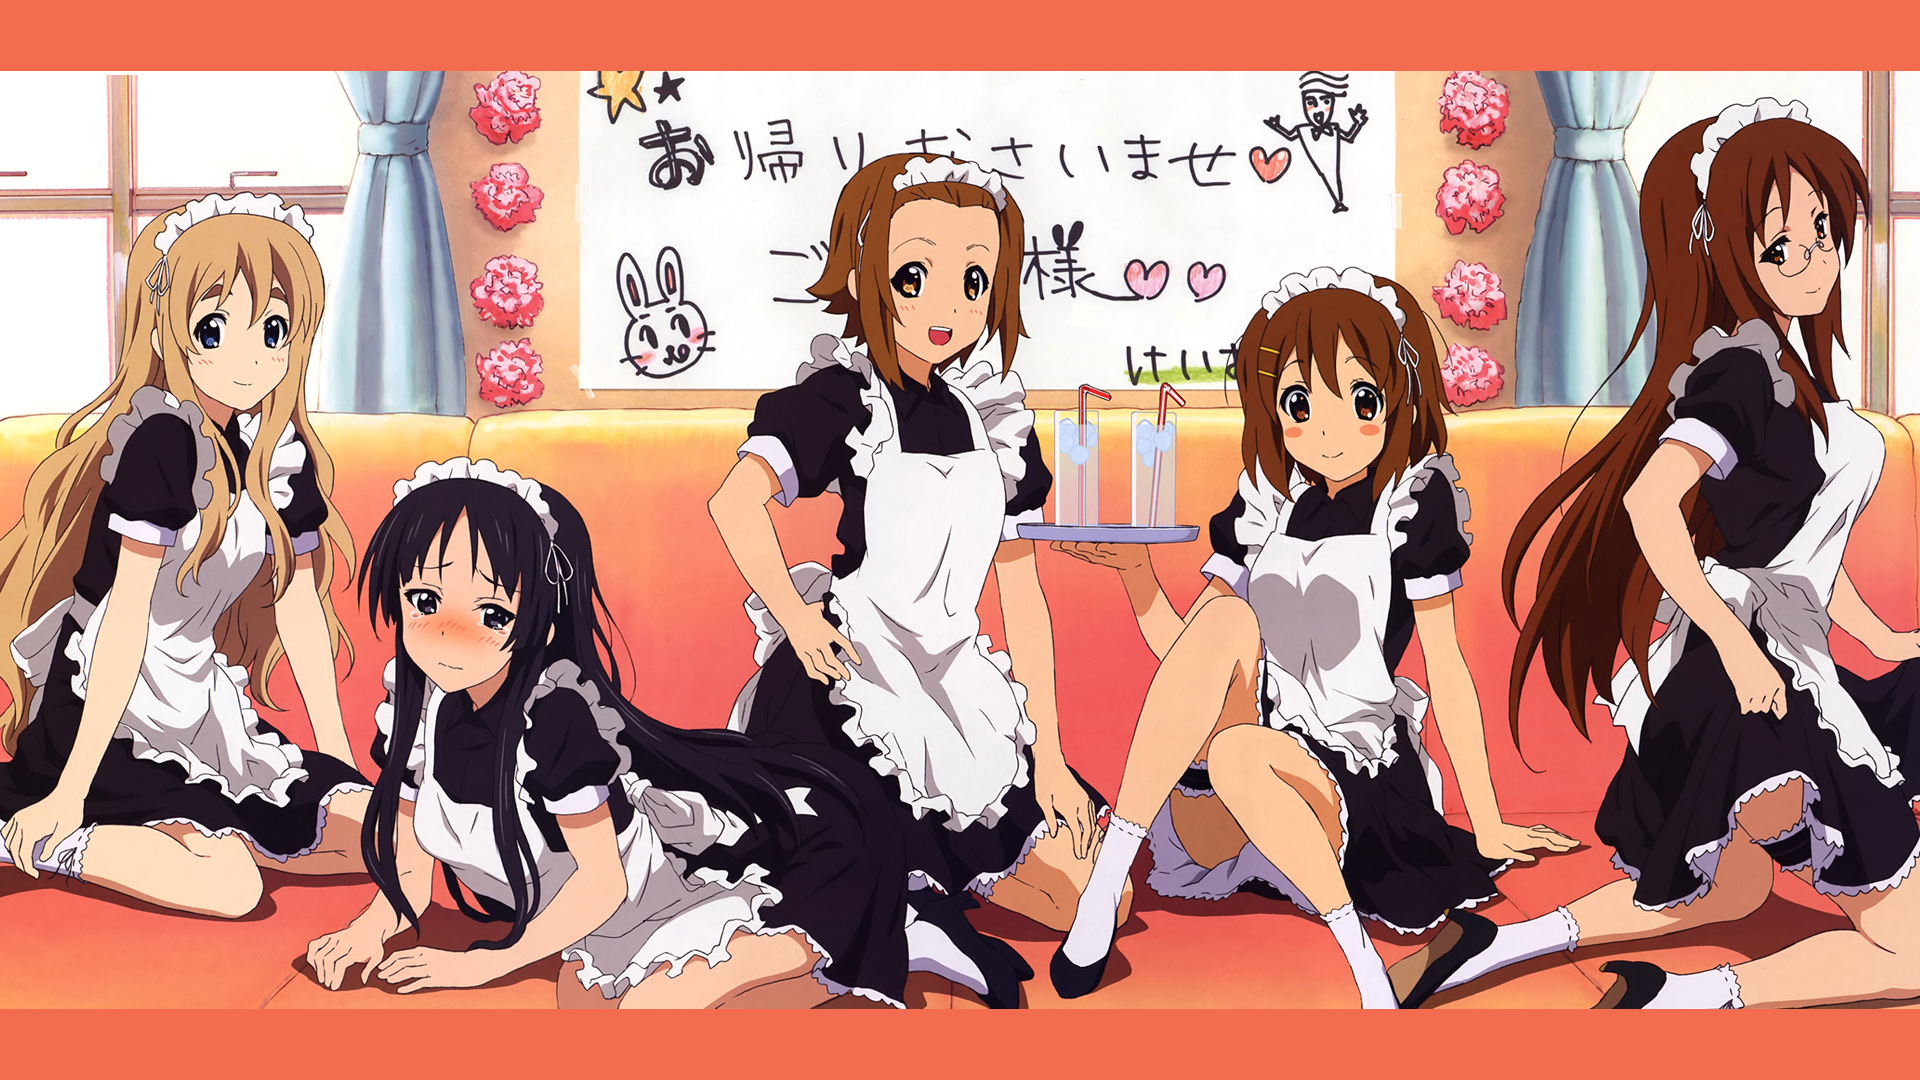 K-ON!, maids, Hirasawa Yui, Akiyama Mio, Tainaka Ritsu, Kotobuki Tsumugi, blush, Cafe - desktop wallpaper